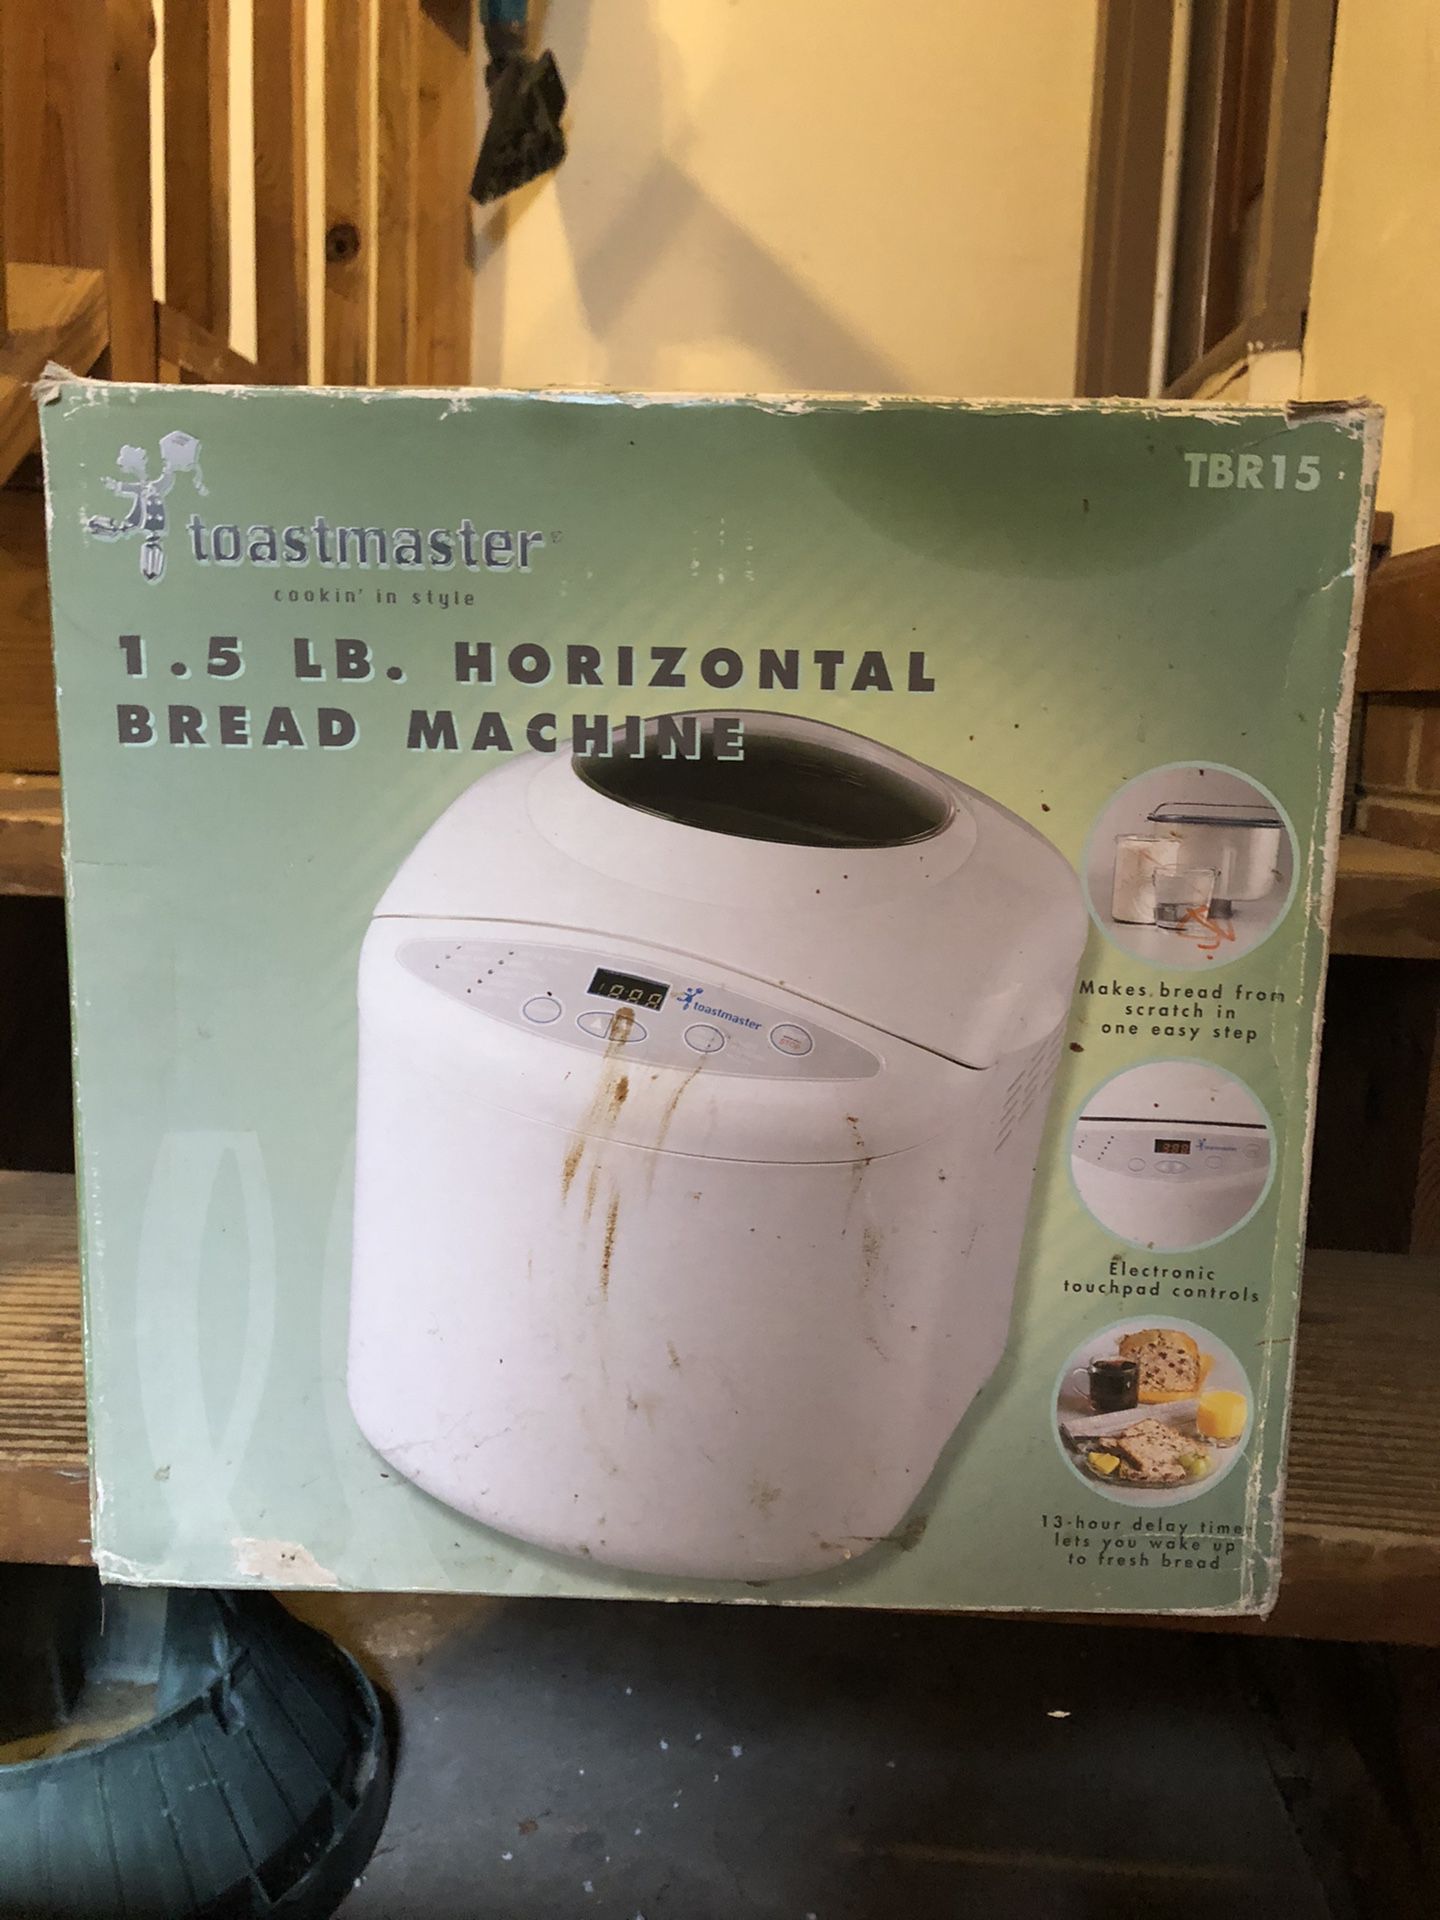 Toastmaster bread maker